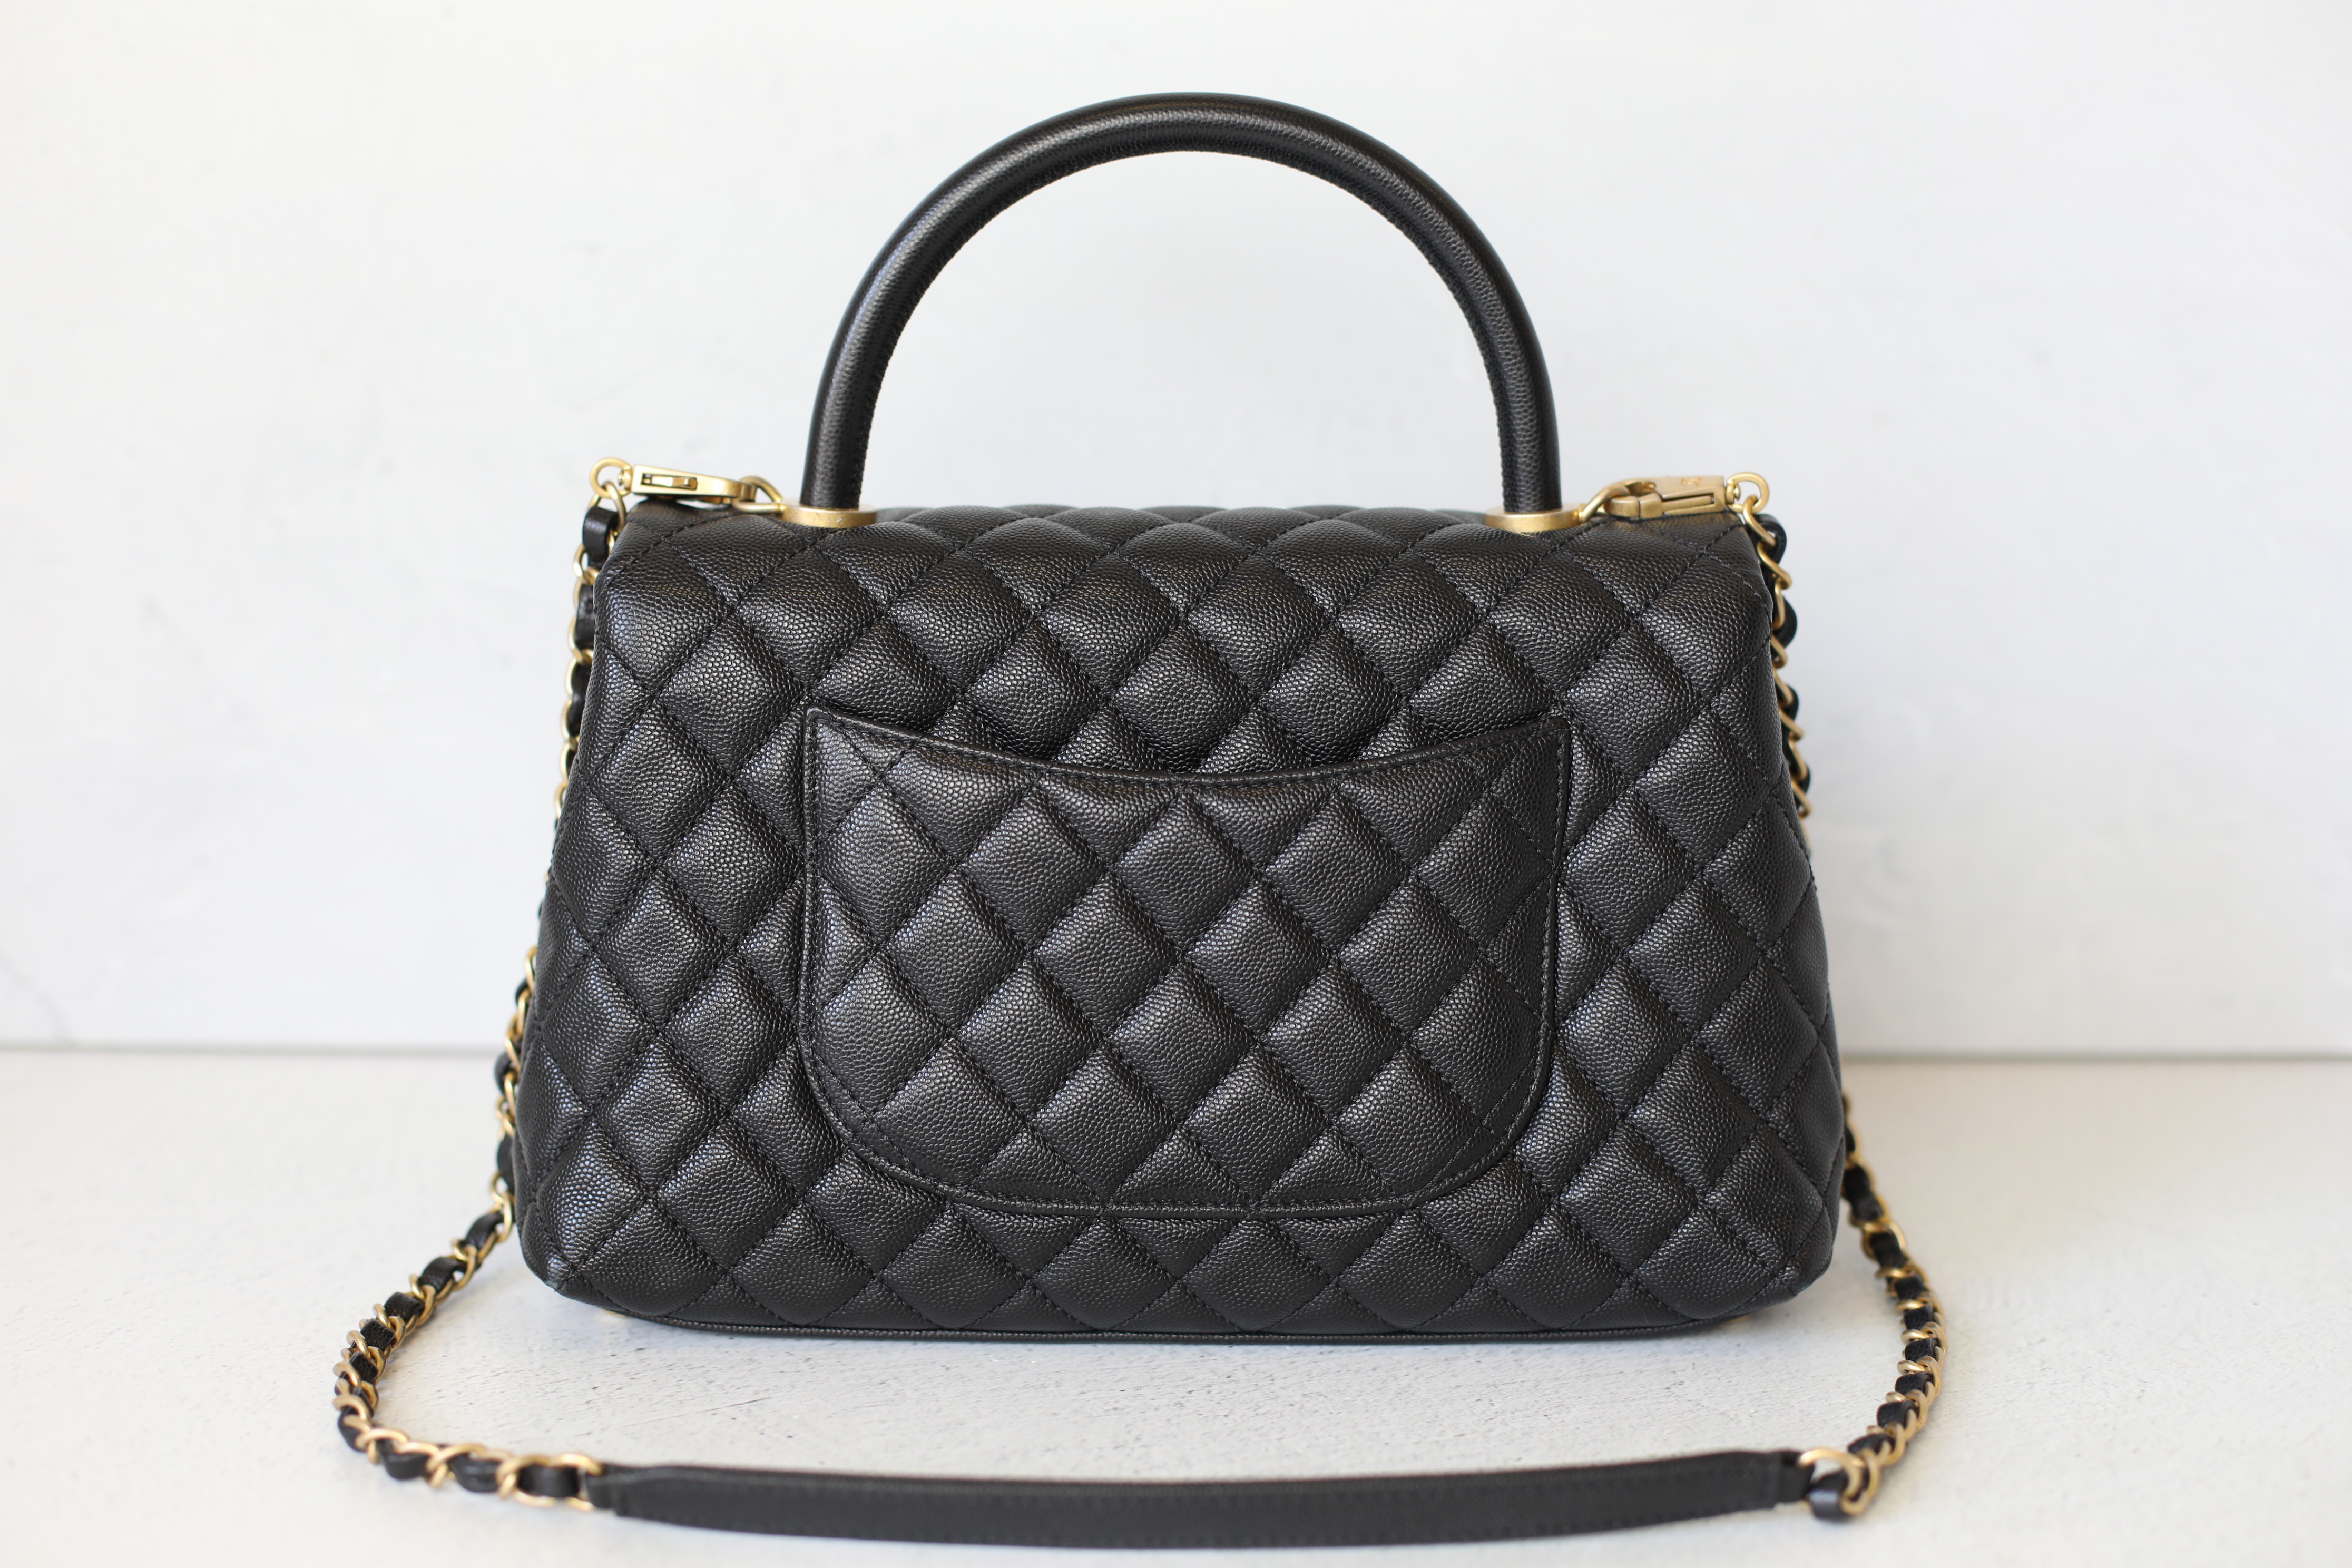 Chanel Coco Handle Small, Lilac Caviar Leather, Gold Hardware, New in Box  MA001 - Julia Rose Boston